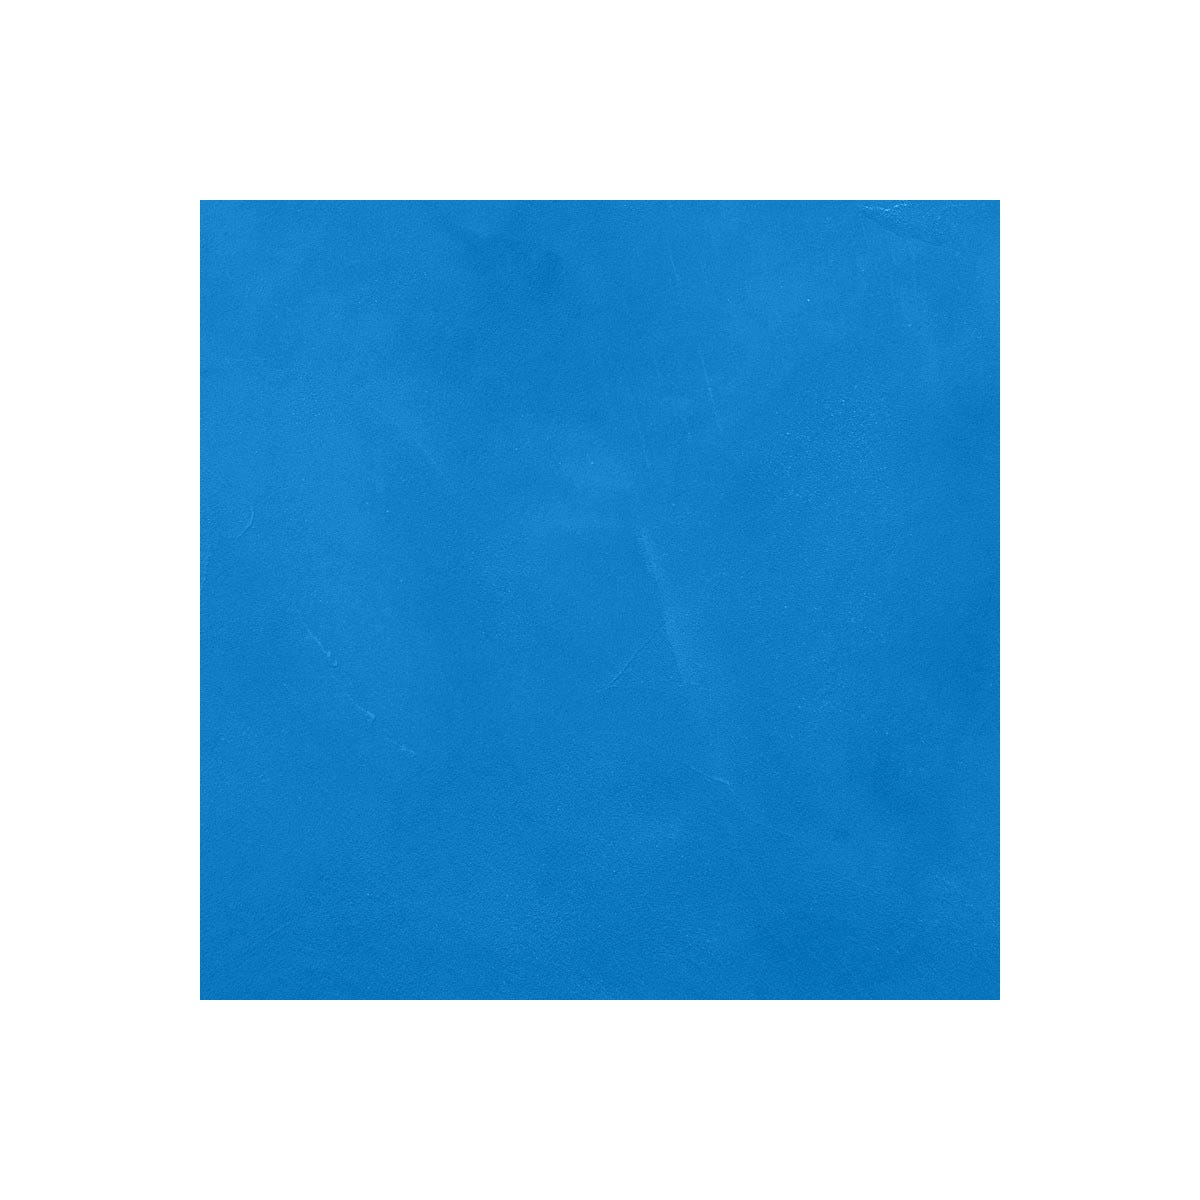 Béton Ciré Escalier - Complet primaire et vernis de finition - En neuf ou rénovation Prussia Bleu - 2 m² (en 2 couches)ARCANE INDUSTRIES 2